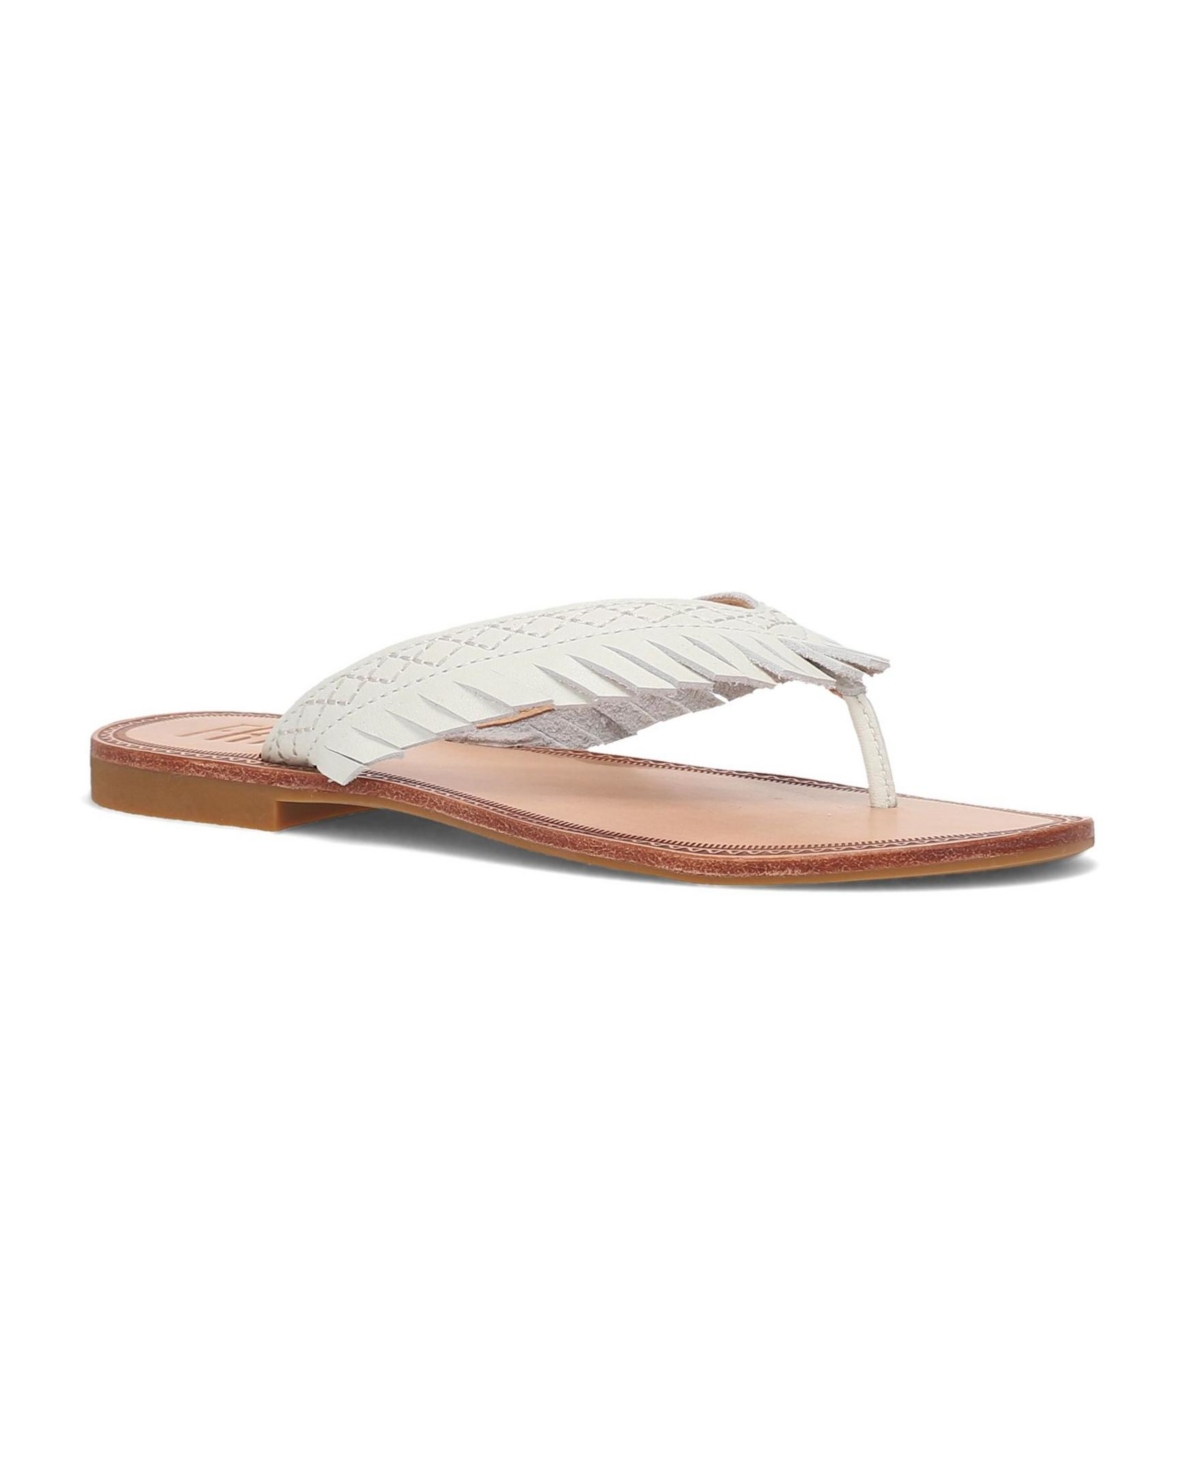 Women's Ava Fringe Thong Flat Sandals - White - Full Grain Leather